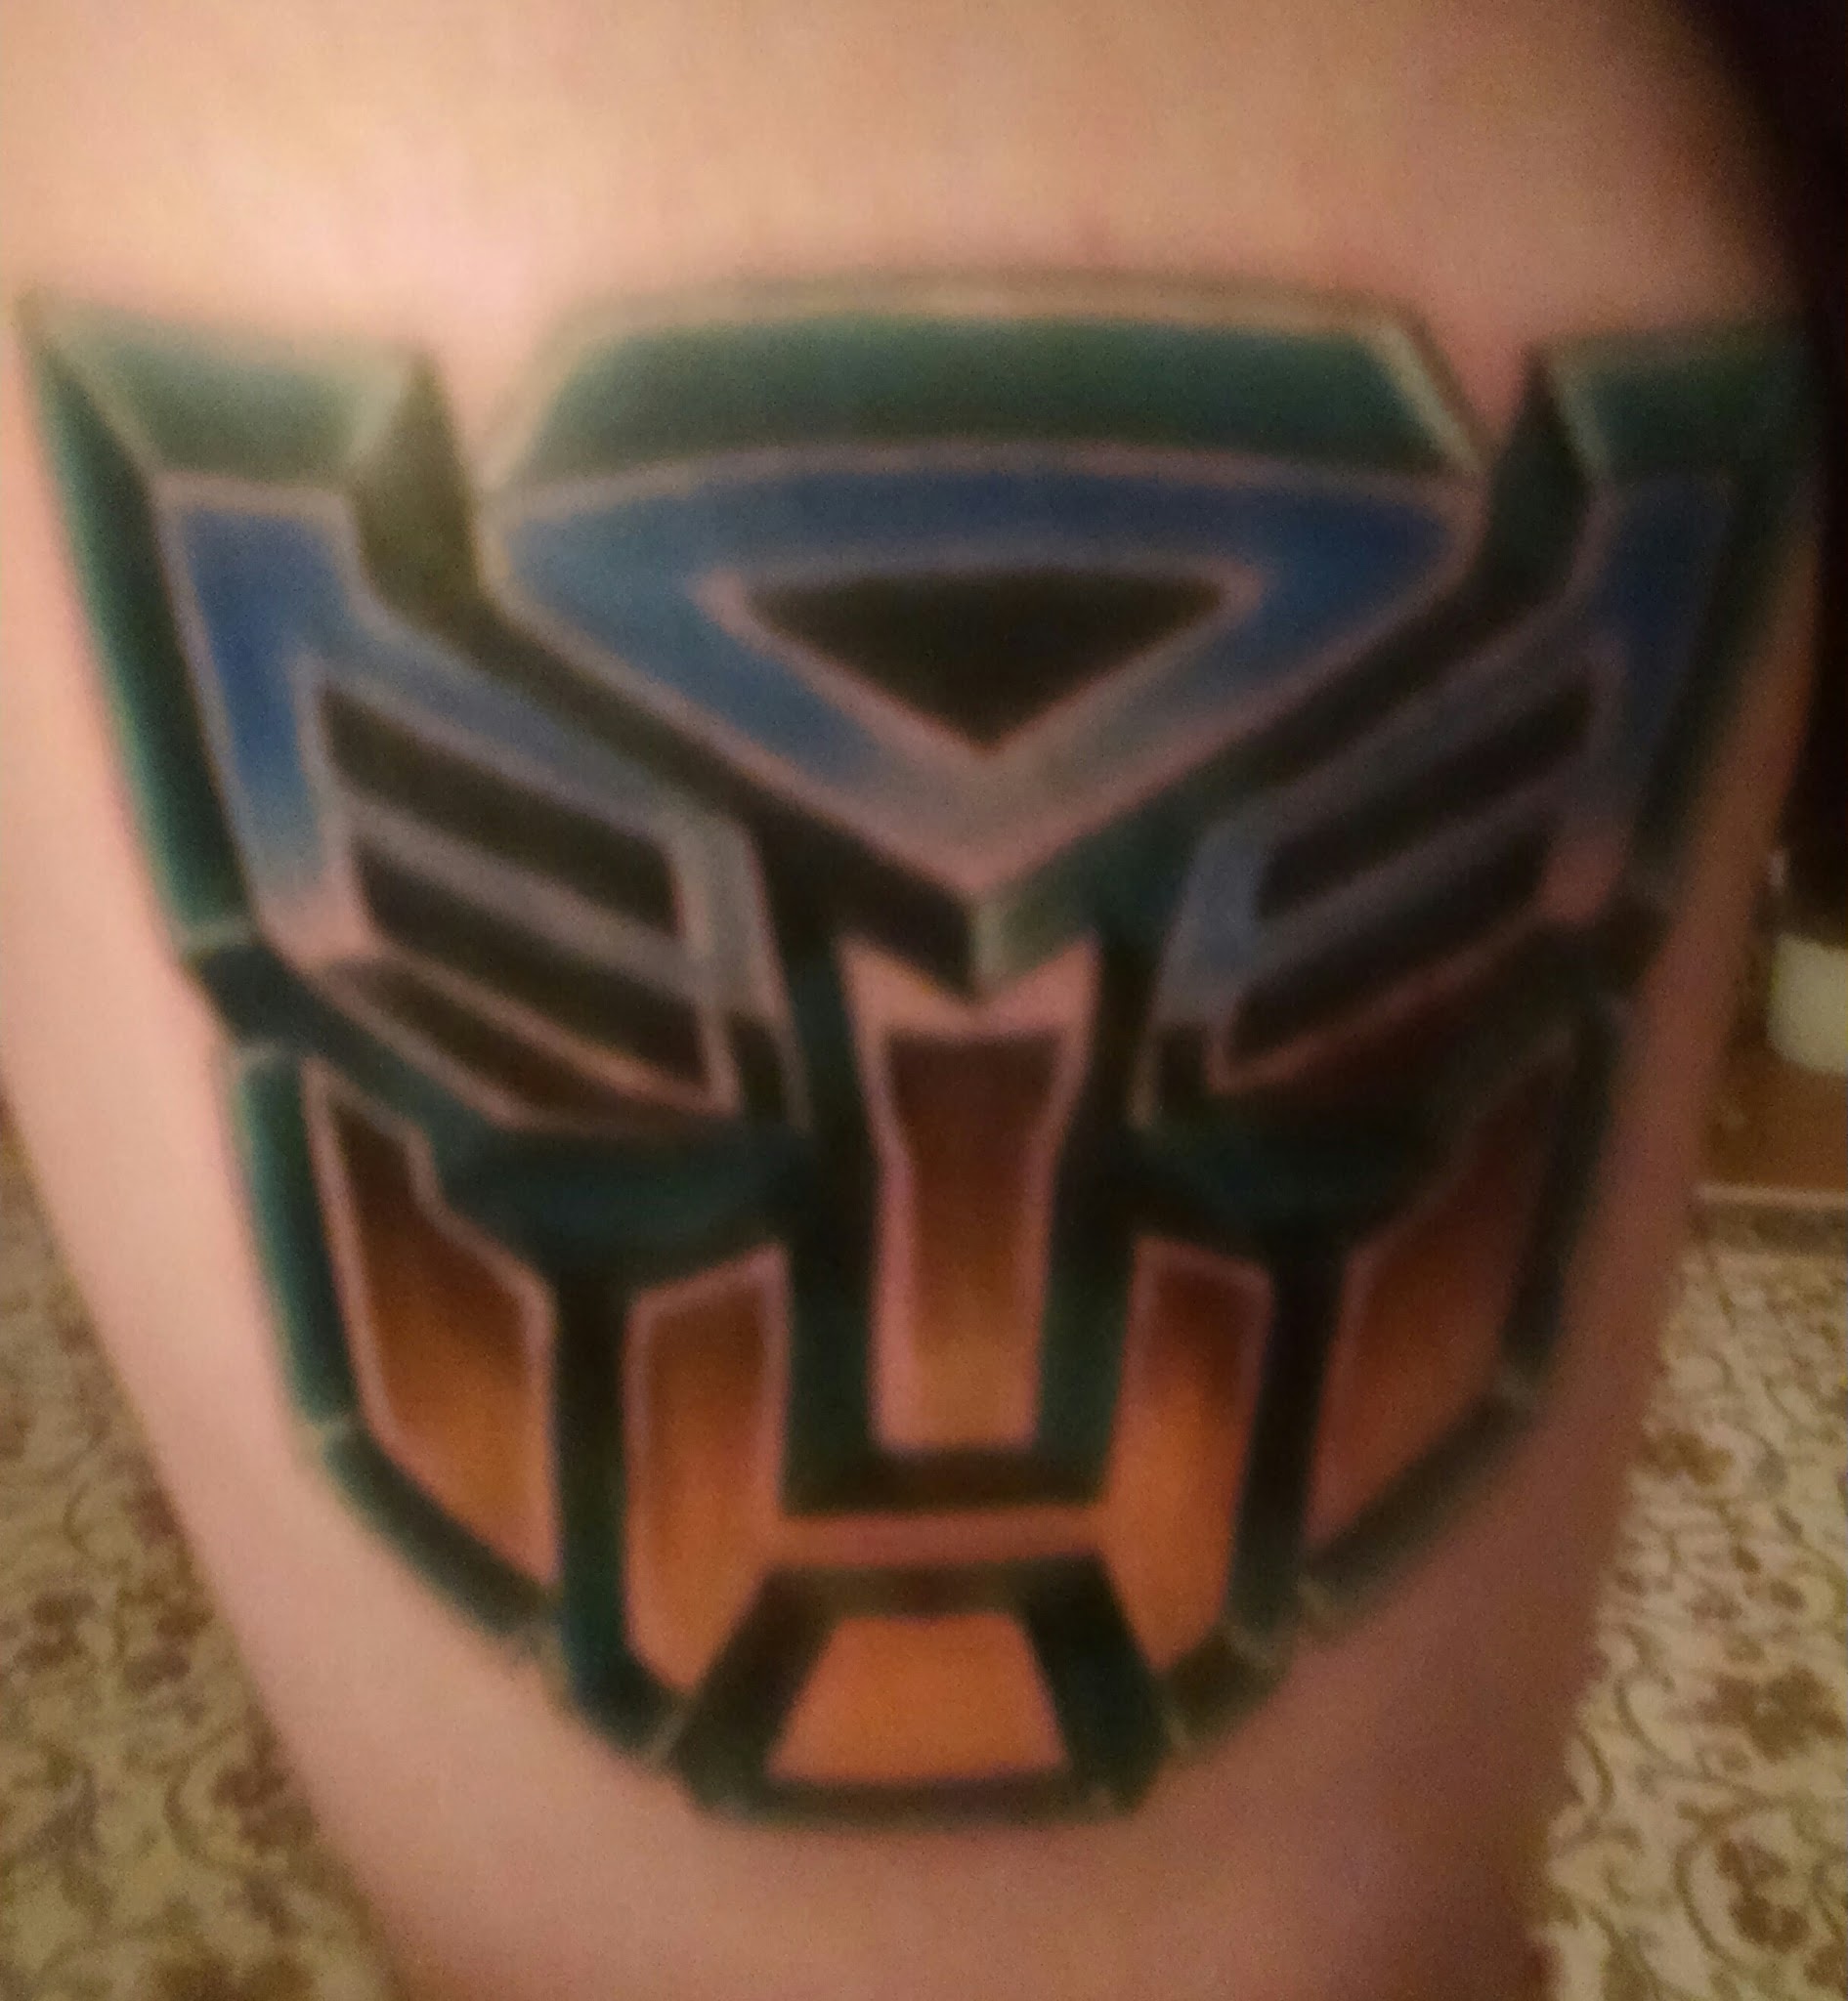 Transformers fan tattoo - Autobots insignia